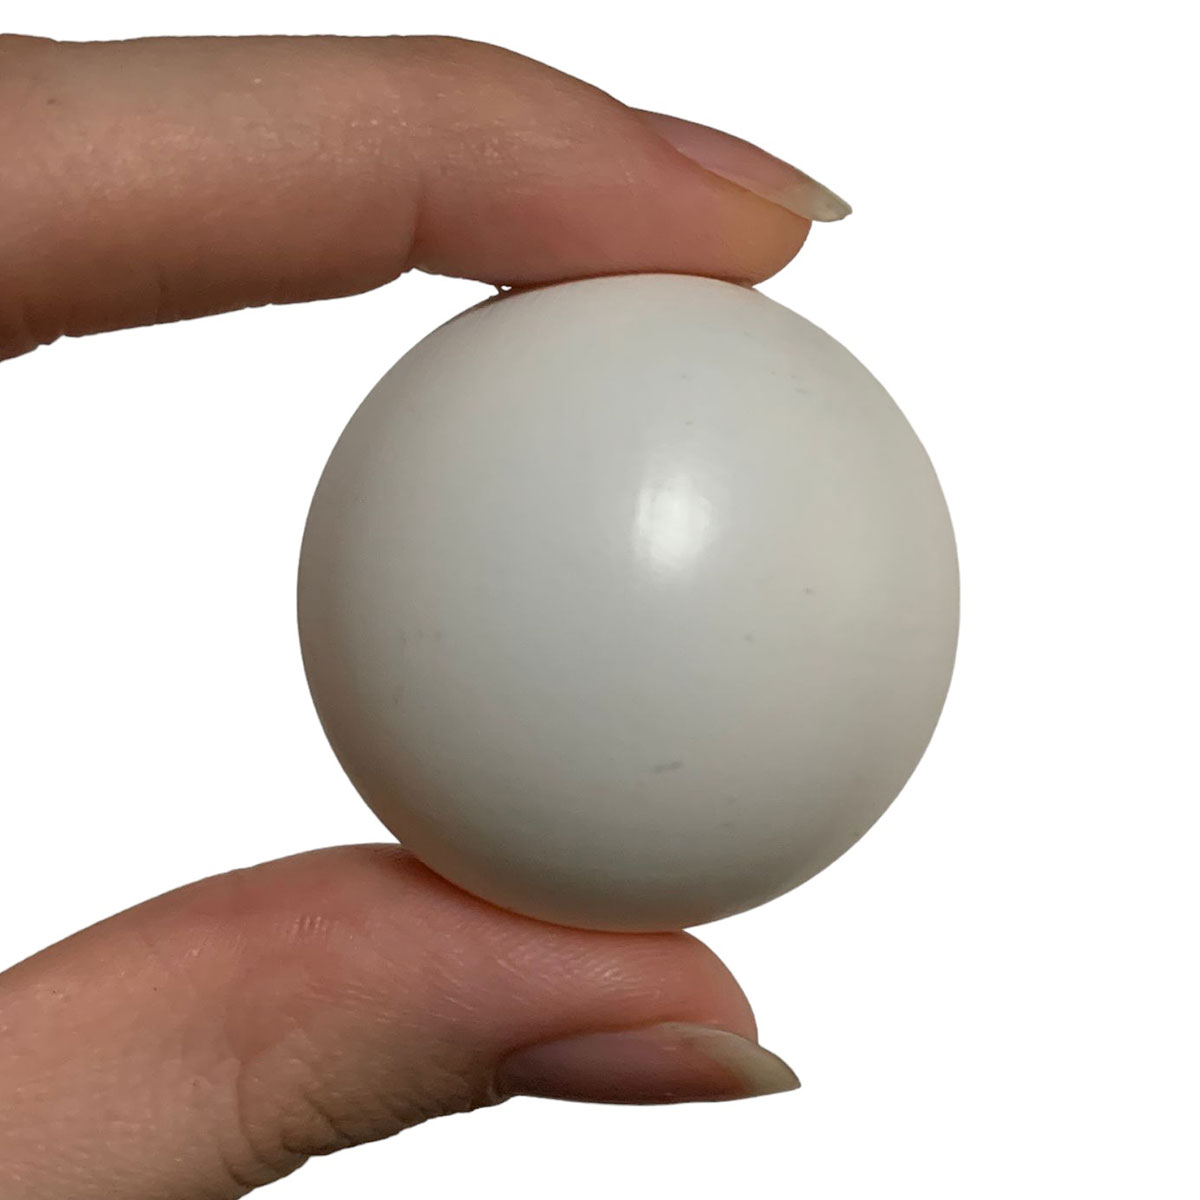 Bolas Bolinhas Plástico Ping-pong Pacote C/50 Unid Branca